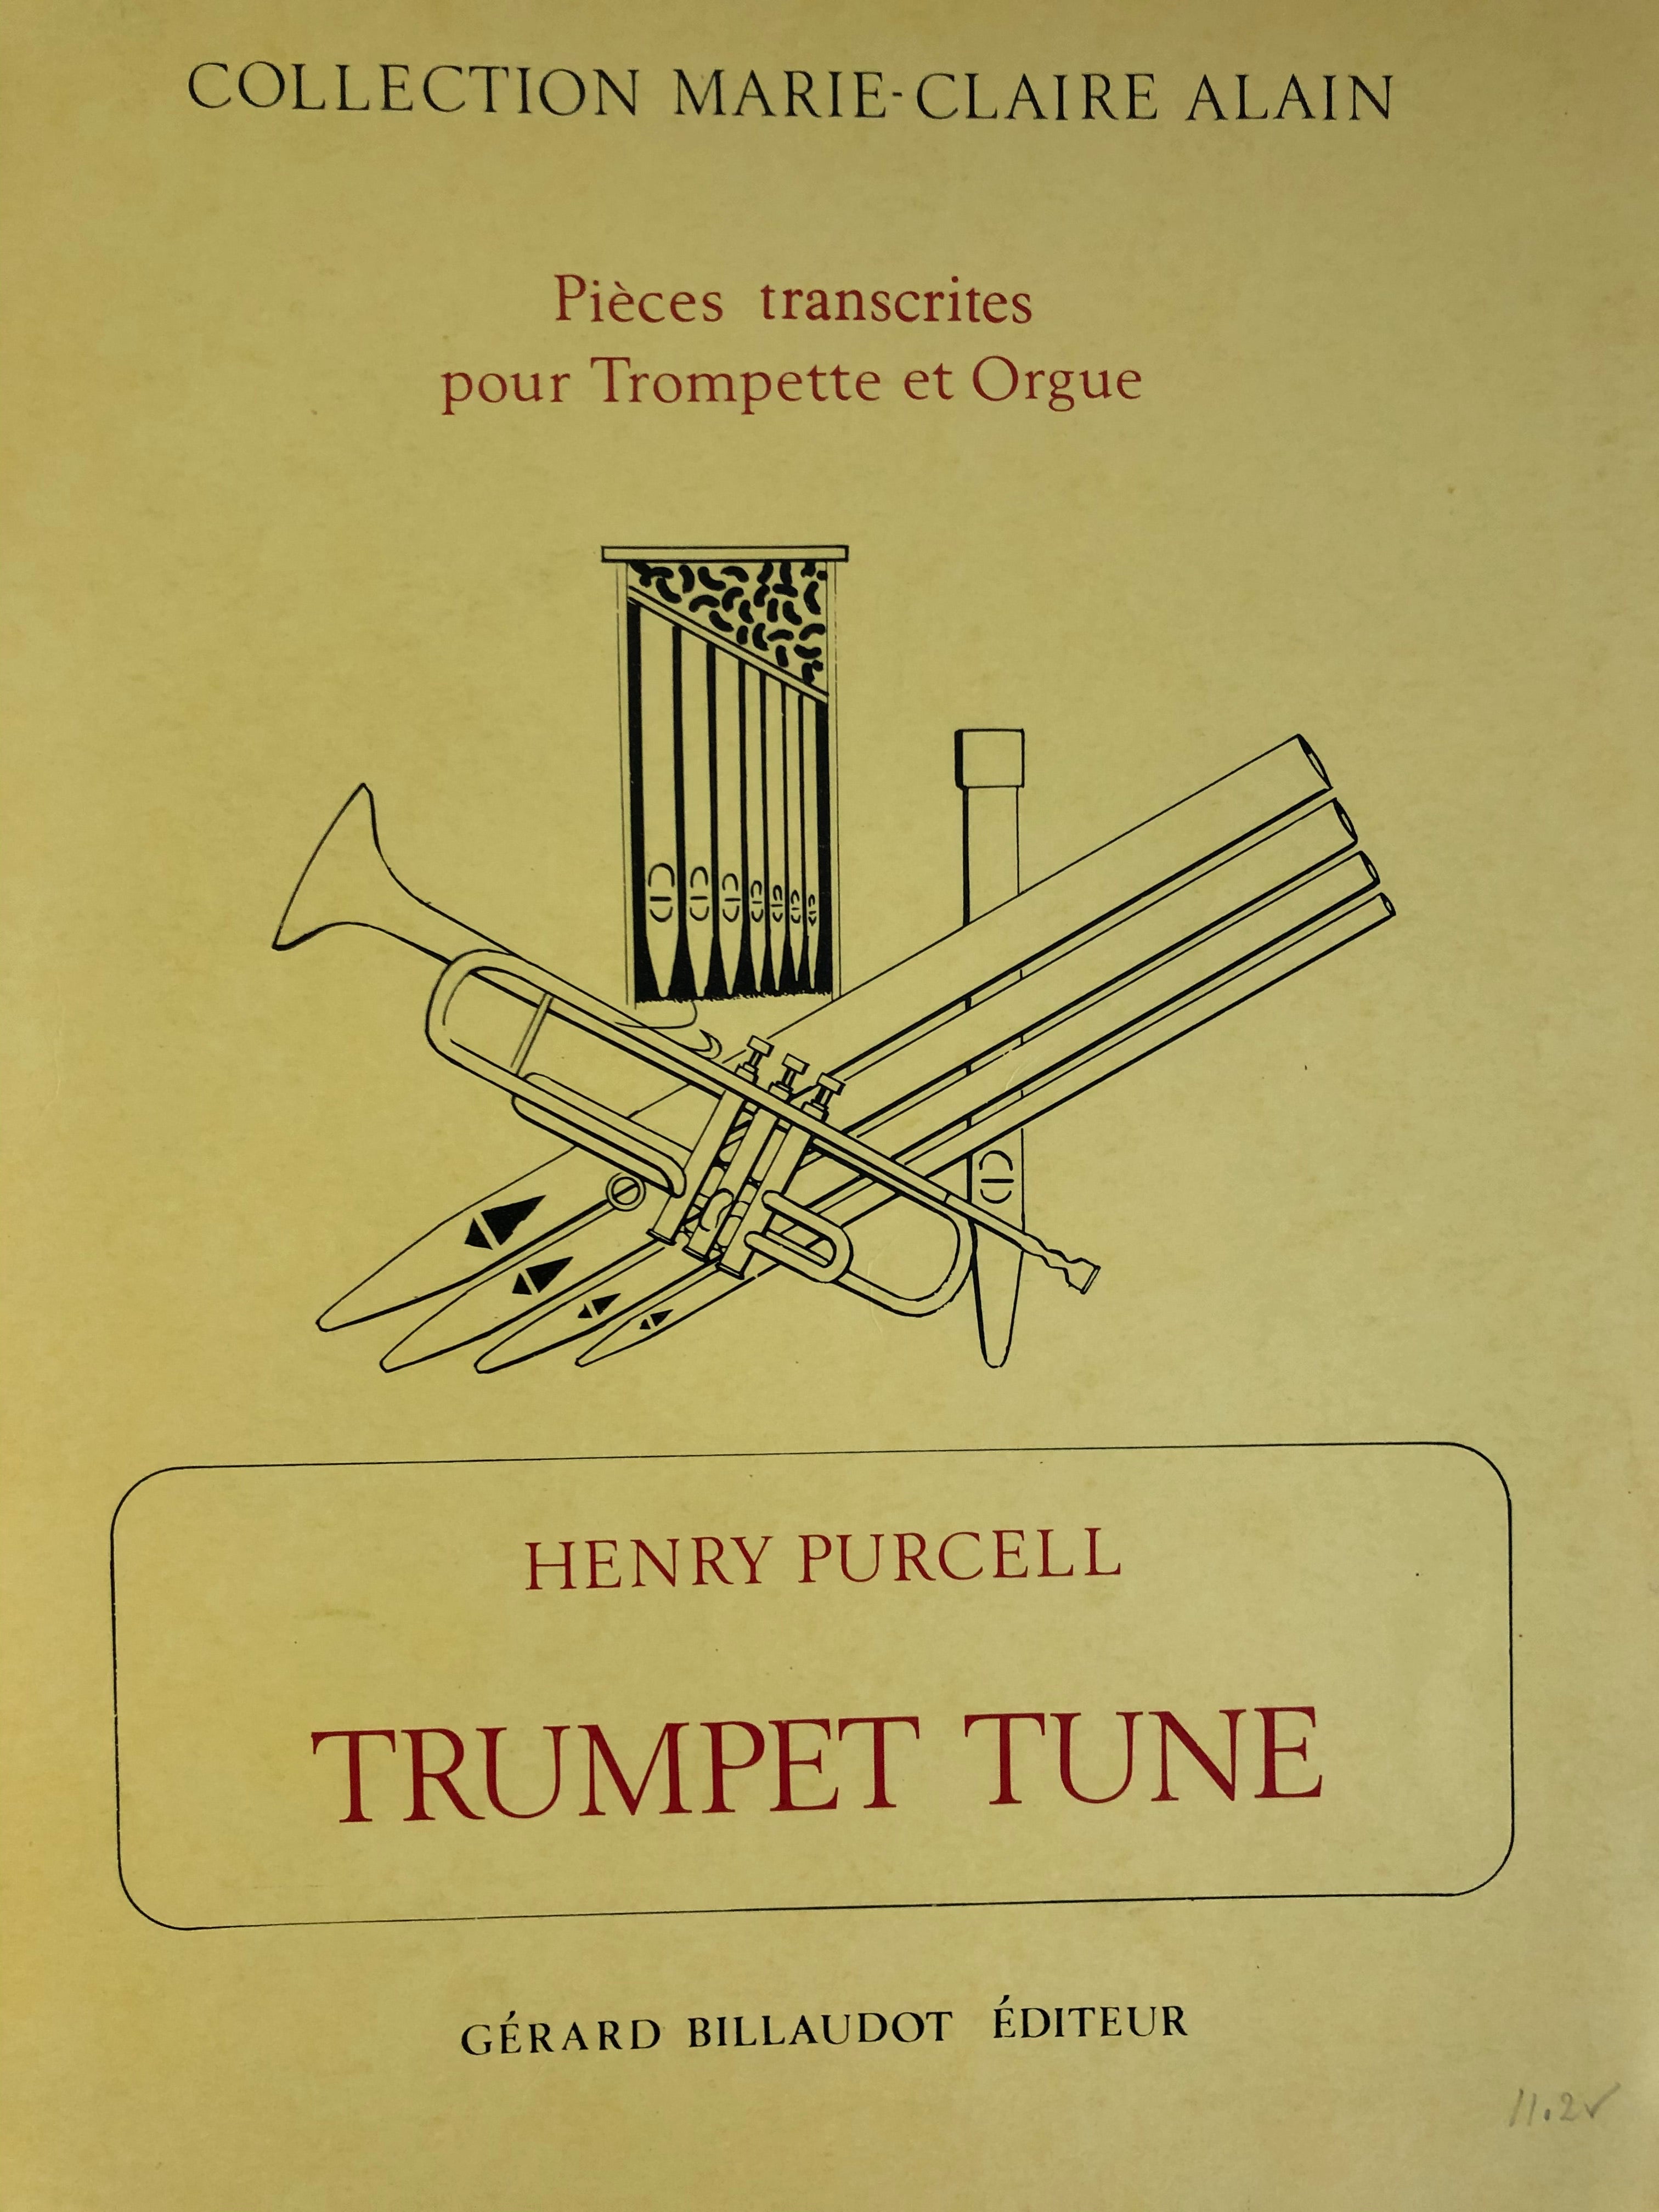 Trumpet Tune, Henry Purcell, voor trompet en orgel - Scattando Verkleedhuis